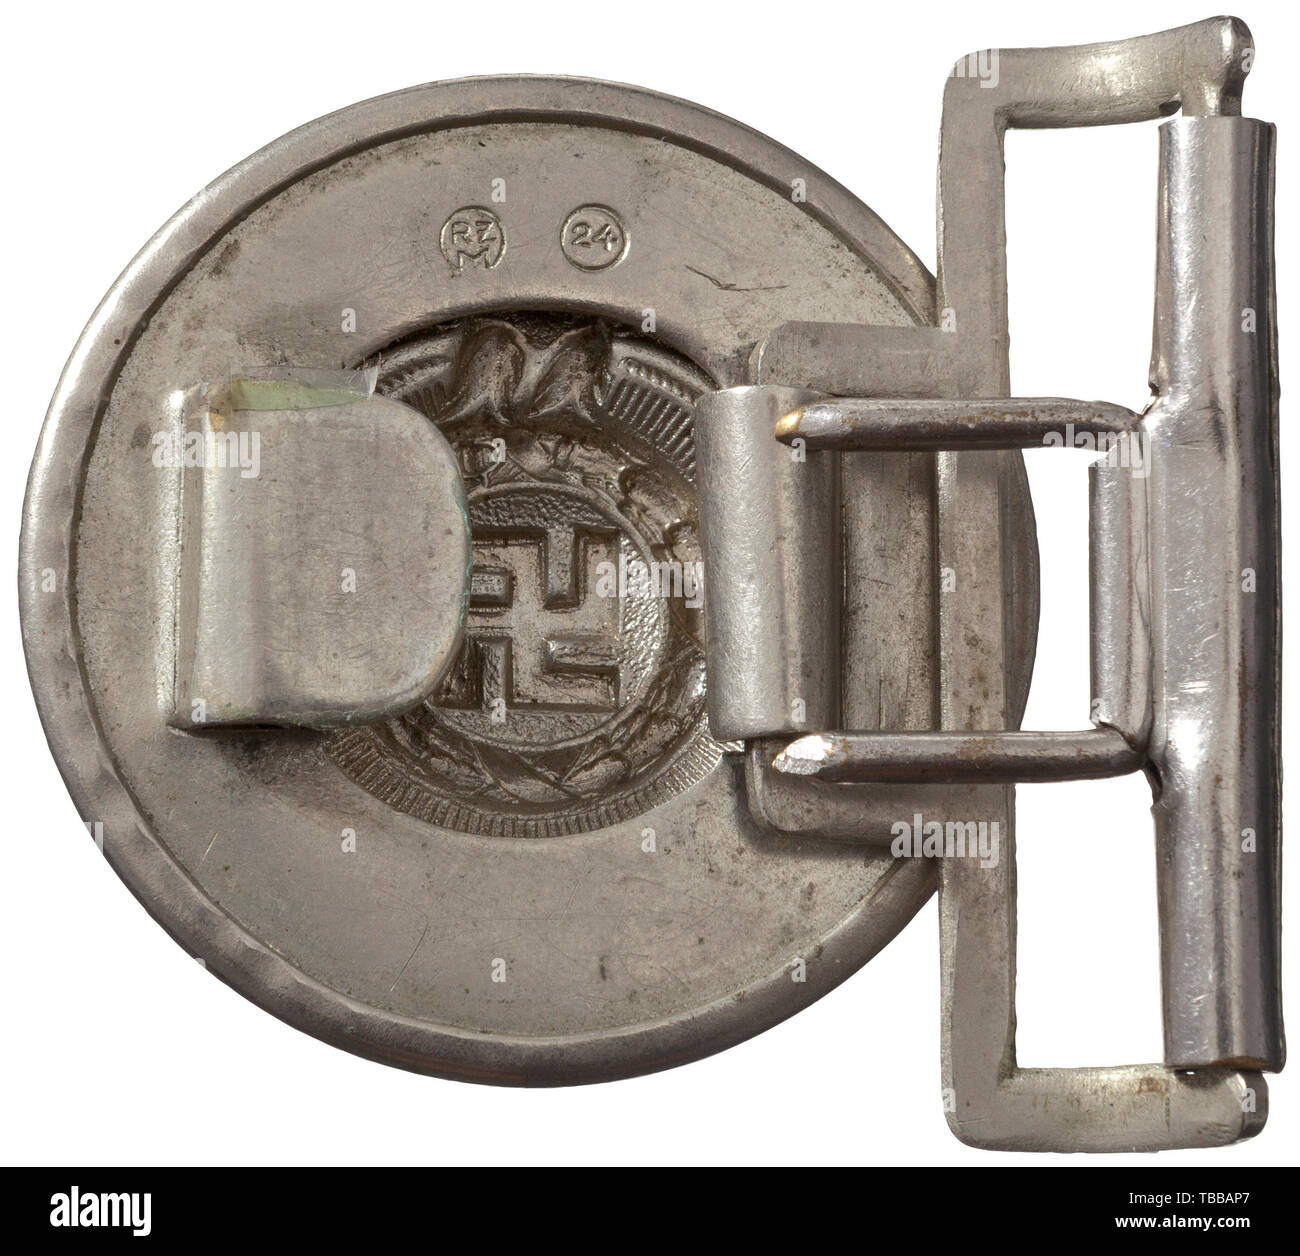 La COLLECTION JOHN PEPERA, un officier SS, boucle de 48 mm de diamètre nickel estampillé, le timbre "boucle inverse RZM (cercle)' et '24' (cercle), Editorial-Use-seulement. Banque D'Images